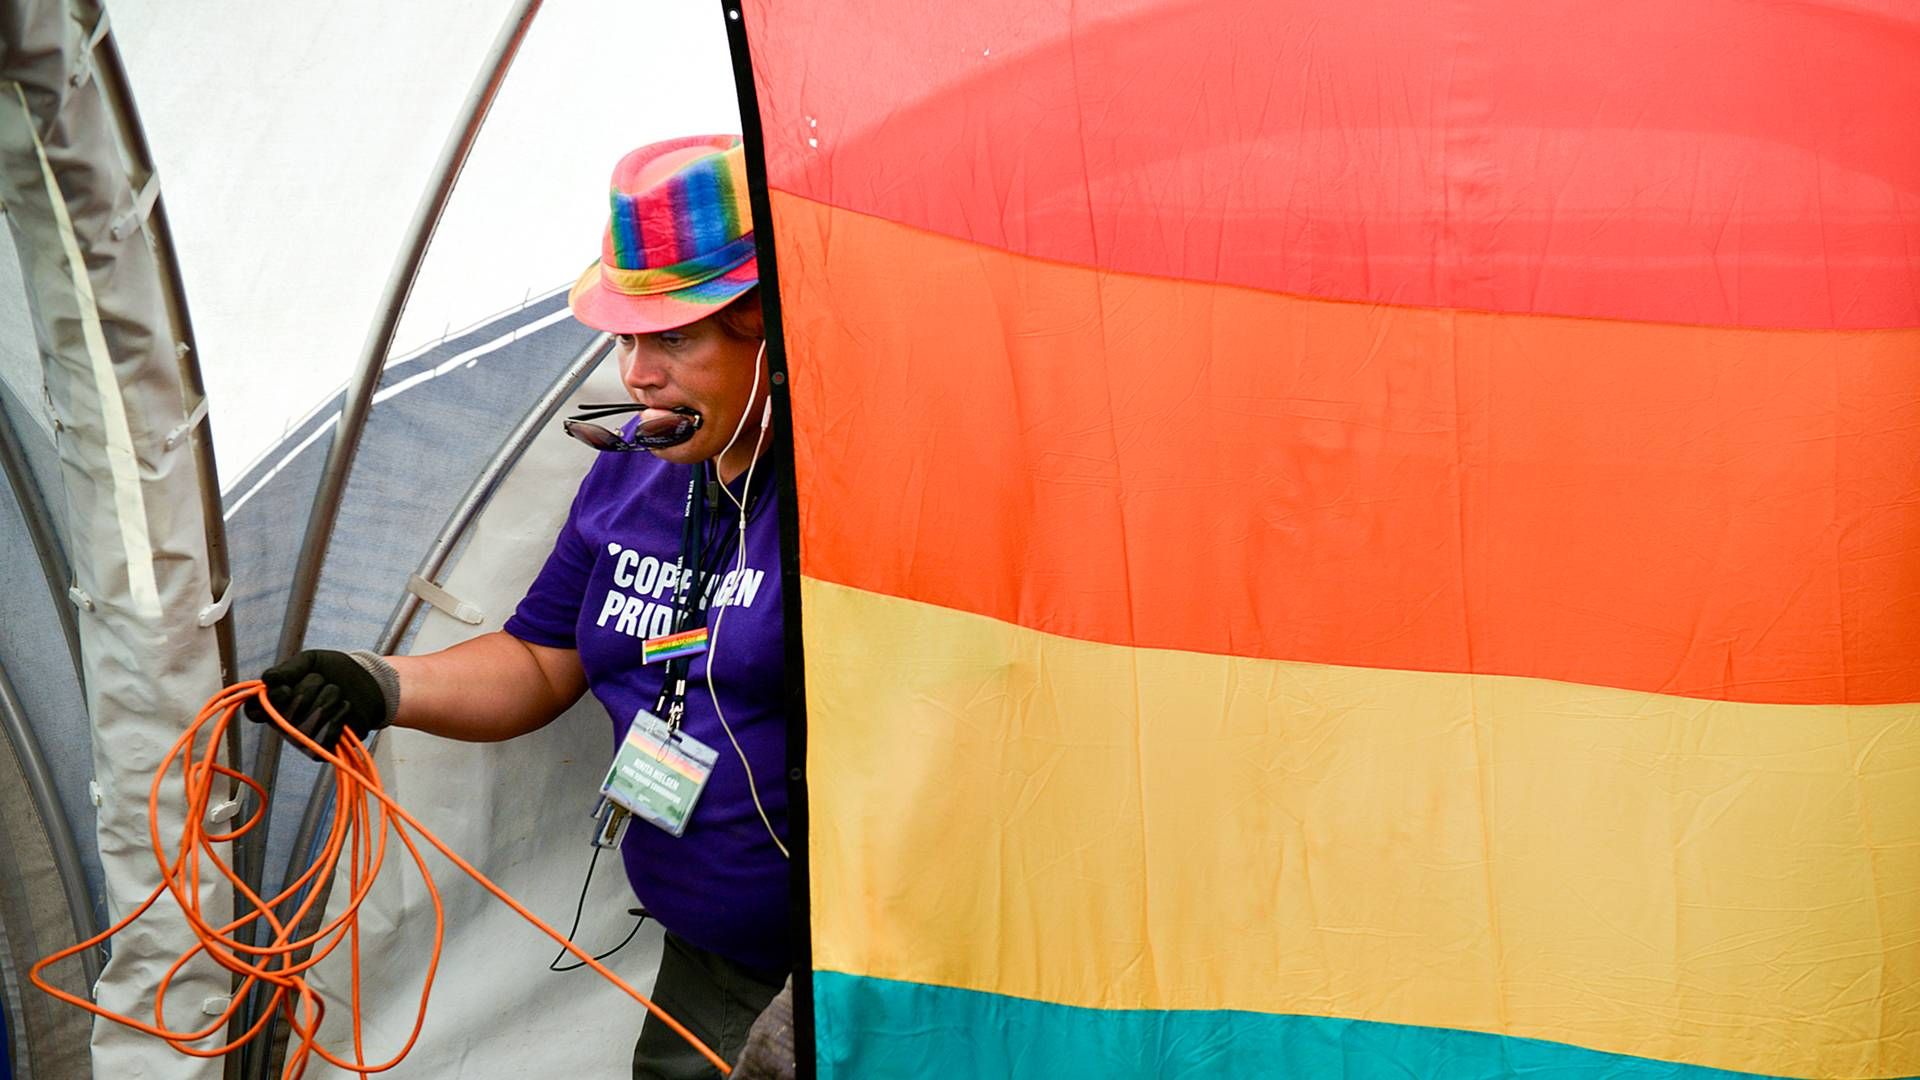 Copenhagen Pride har indkaldt til endnu et onlinemøde med partnervirksomhederne torsdag. | Foto: Lars Krabbe/Jyllands-Posten/Ritzau Scanpix